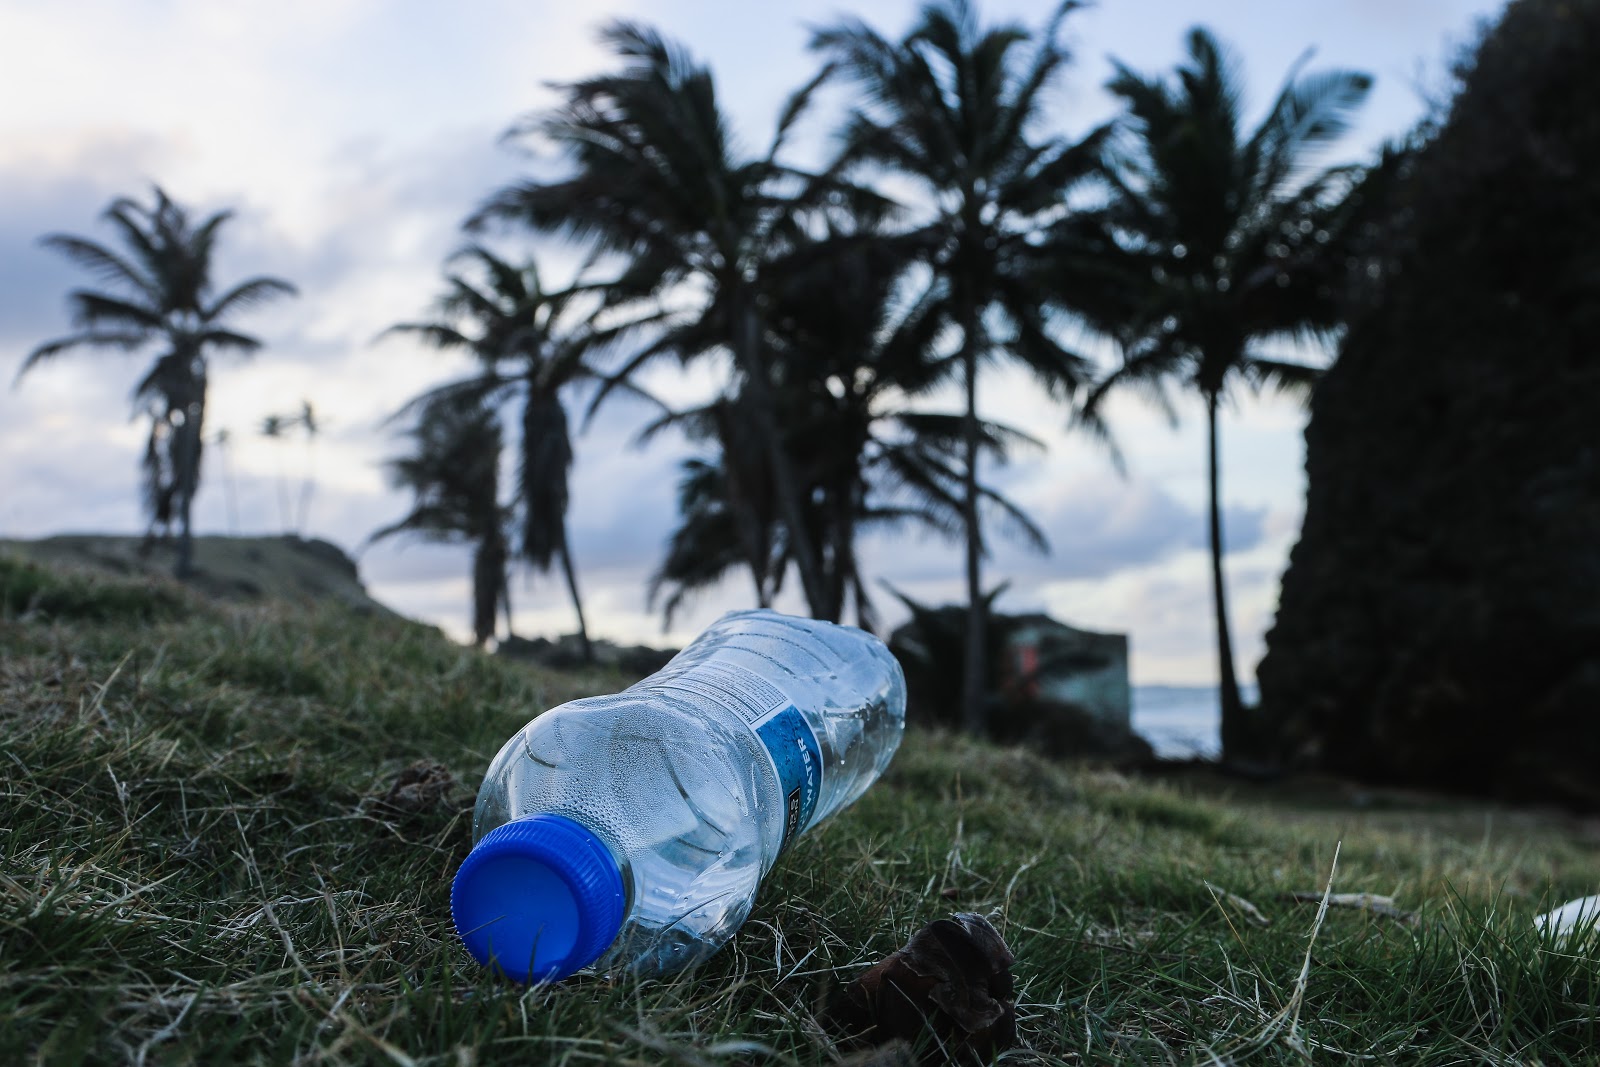 Single-Use Water Bottles Banned in LA?